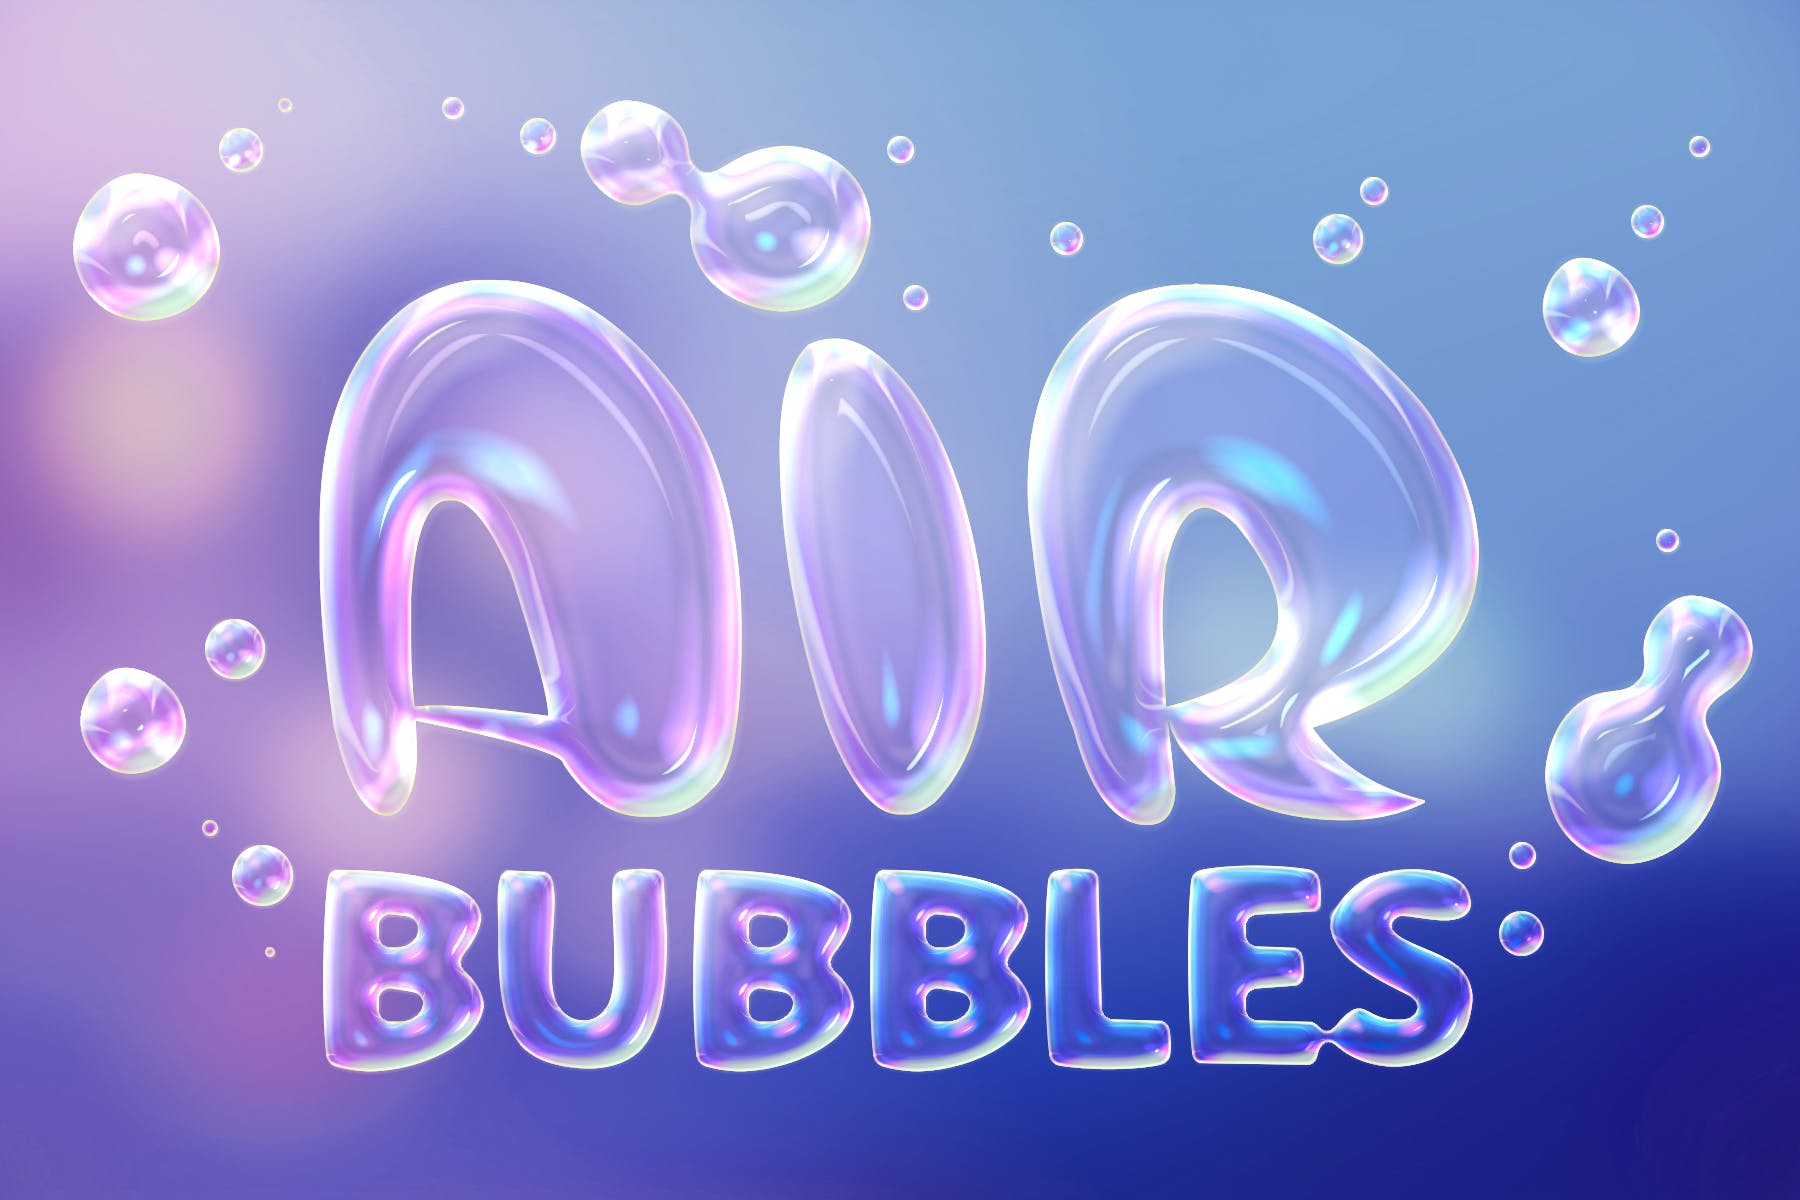 肥皂泡文字特效大洋岛精选PS动作 Soap Bubbles Photoshop Action插图4